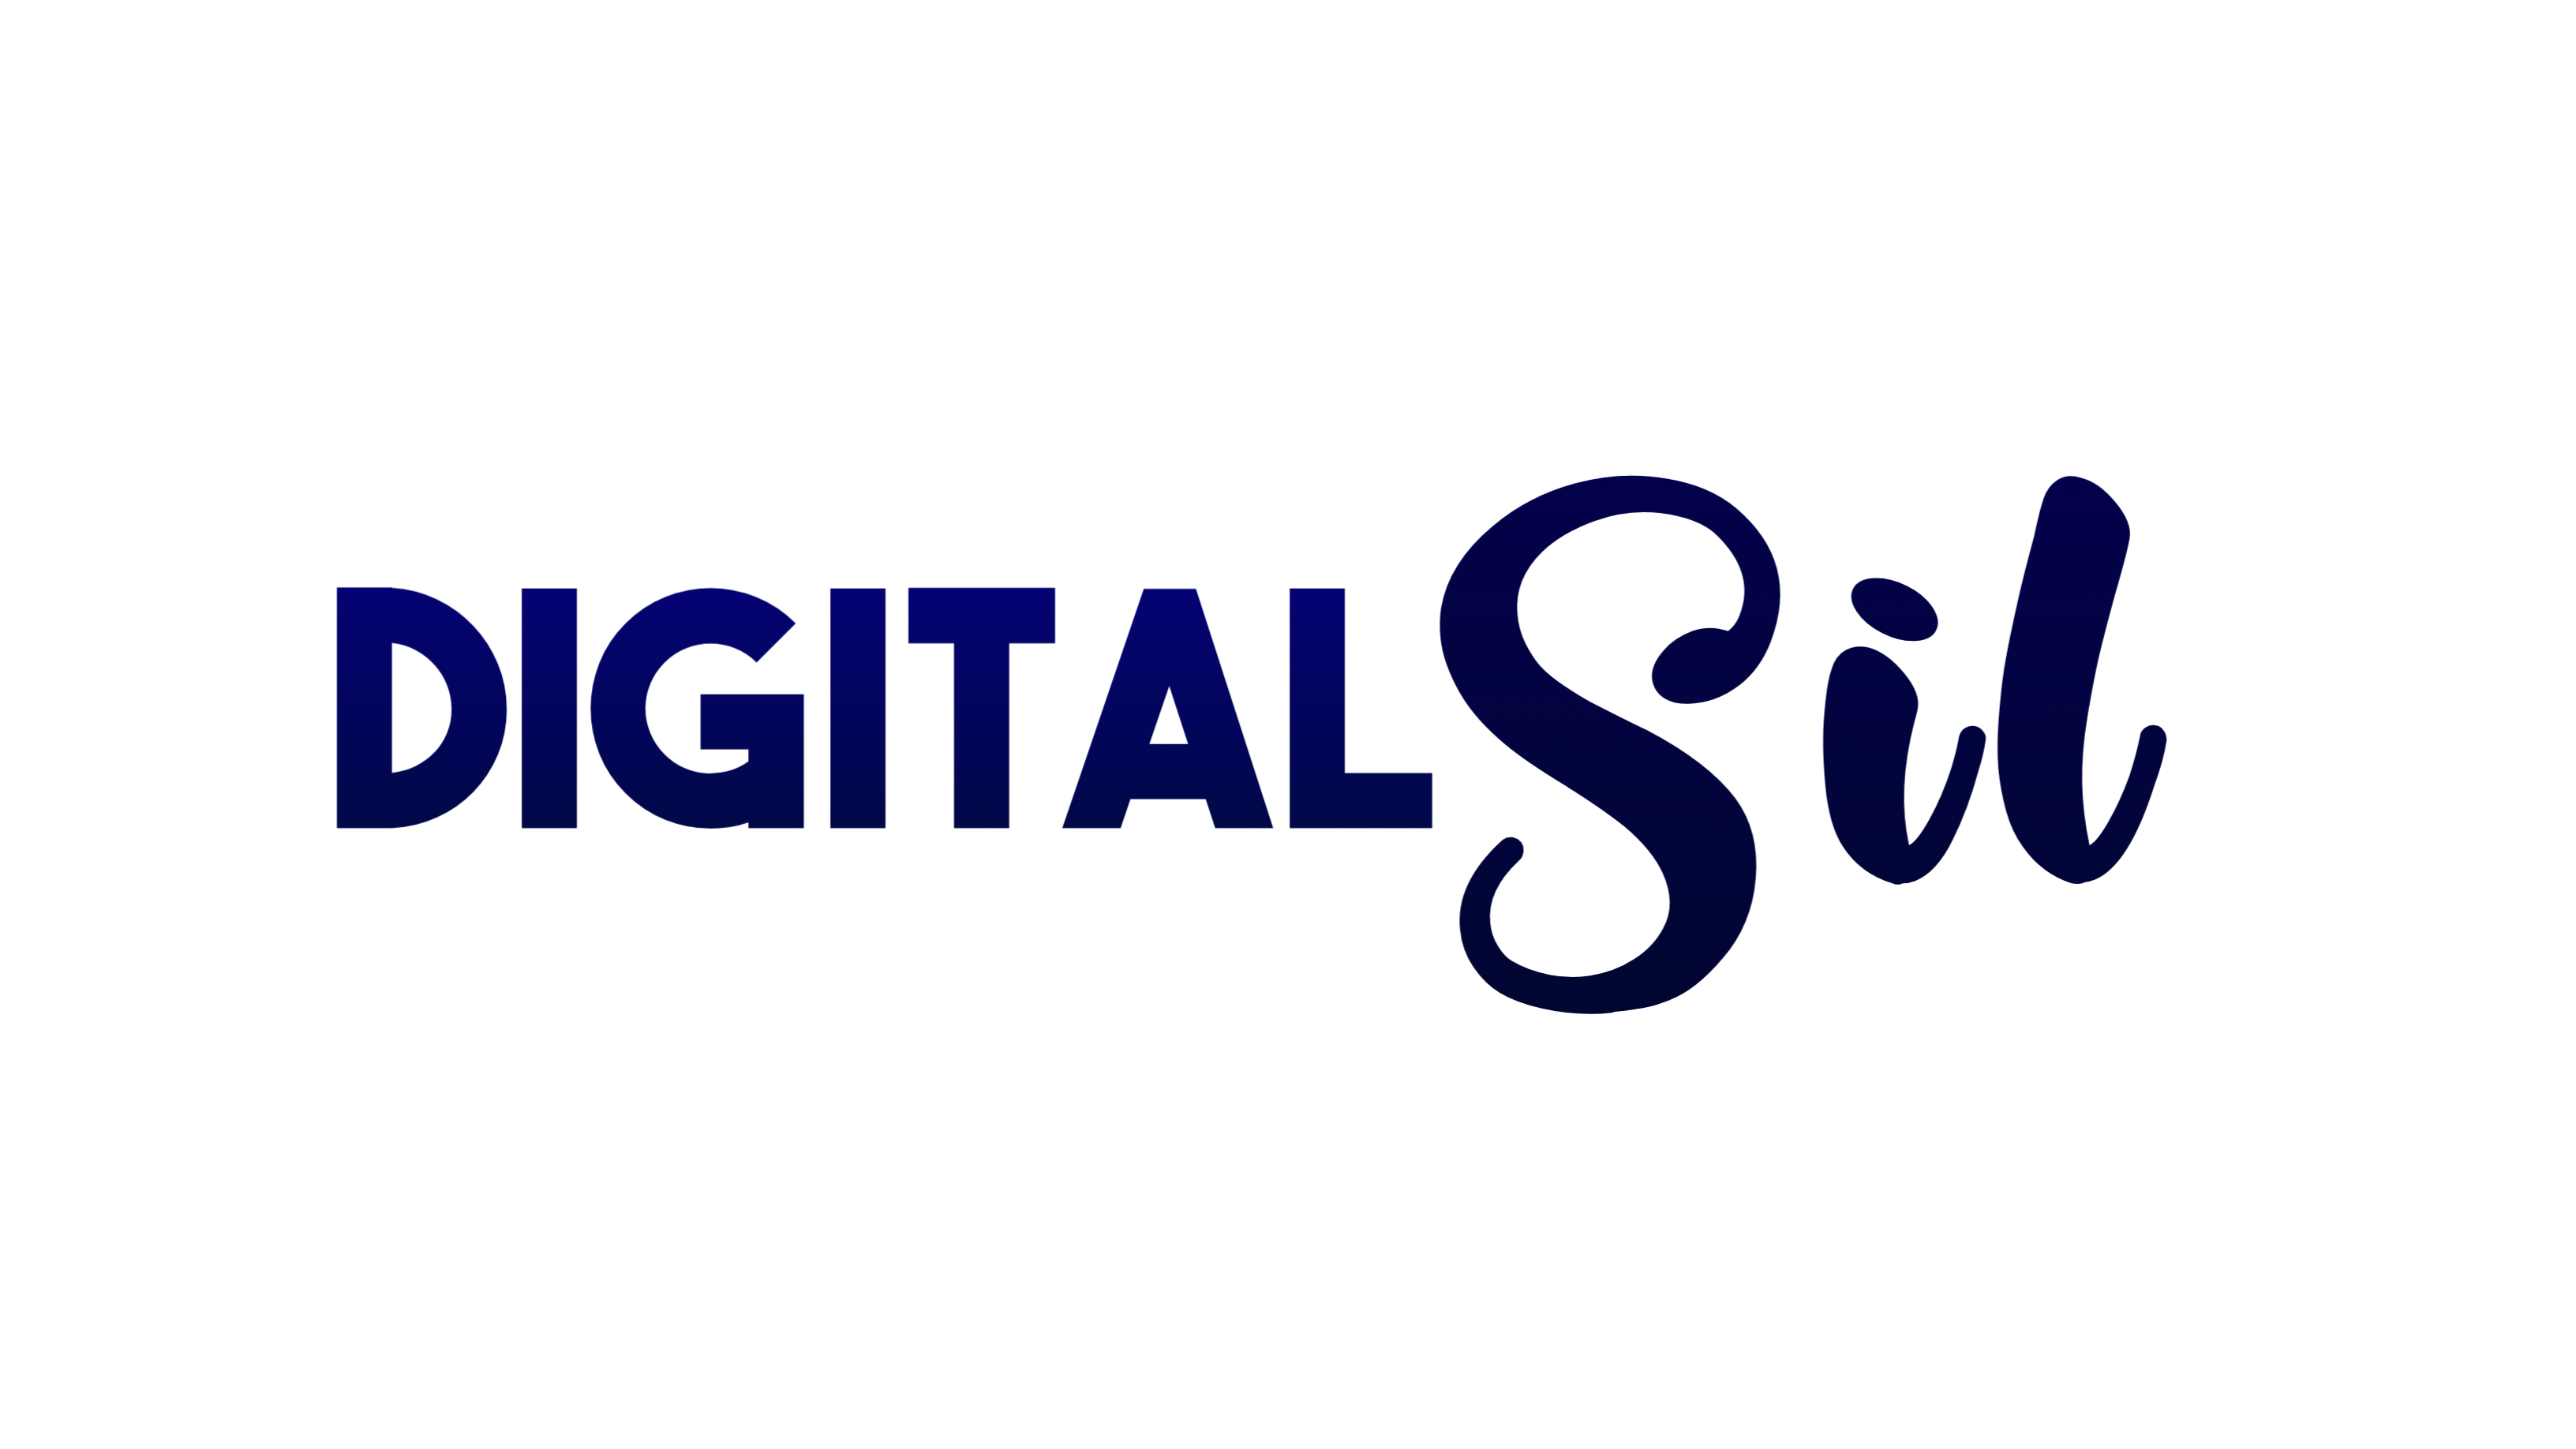 digitalsil.com